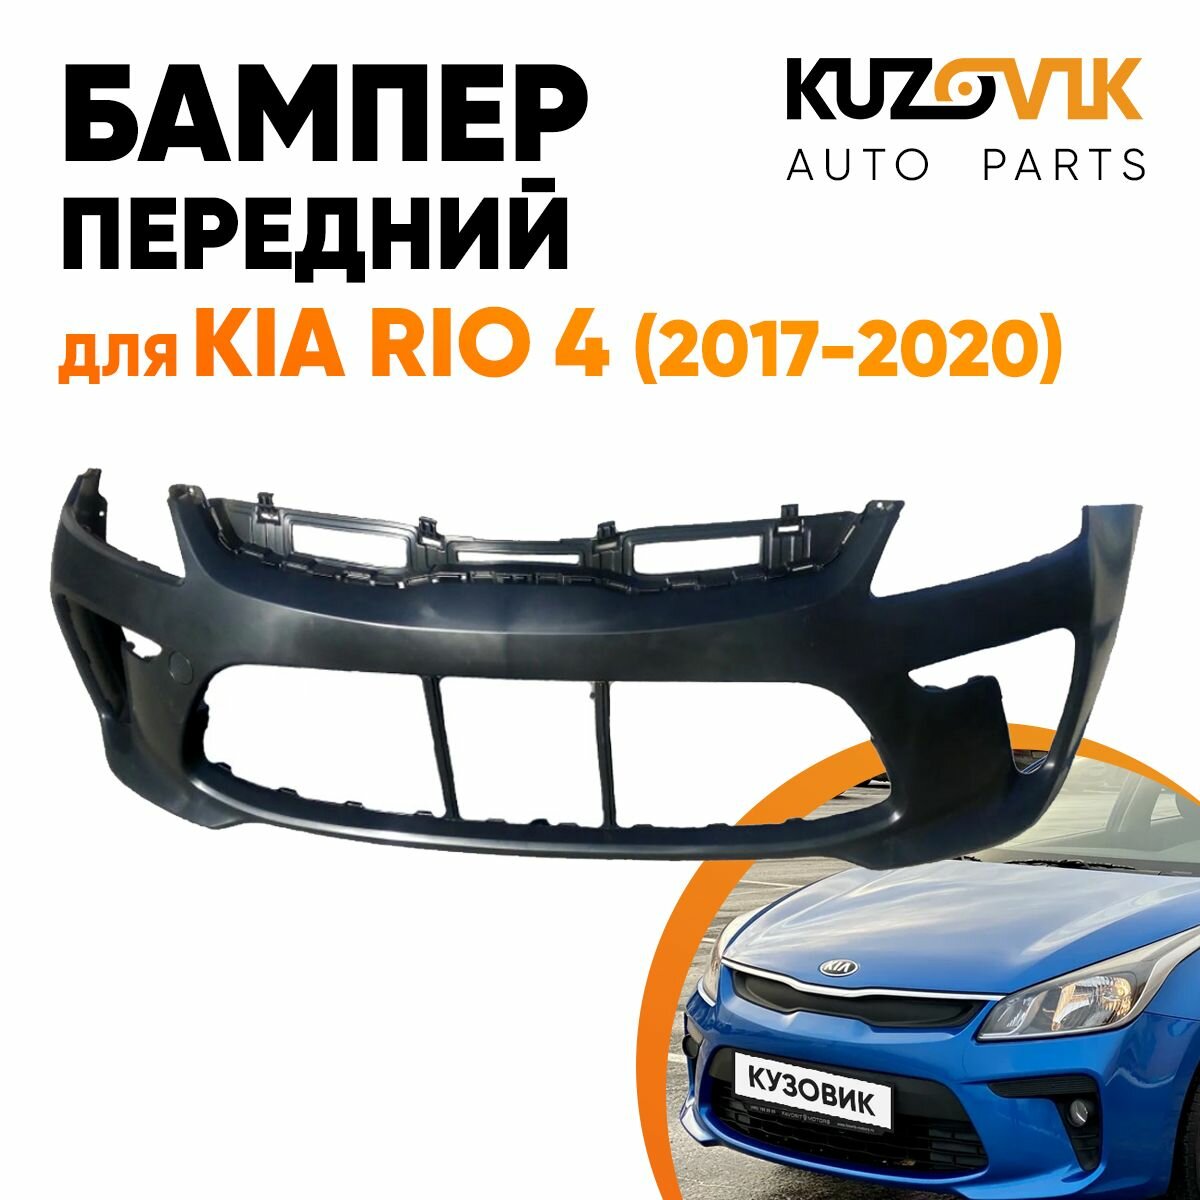 Бампер передний Kia Rio 4 (2017-2020)